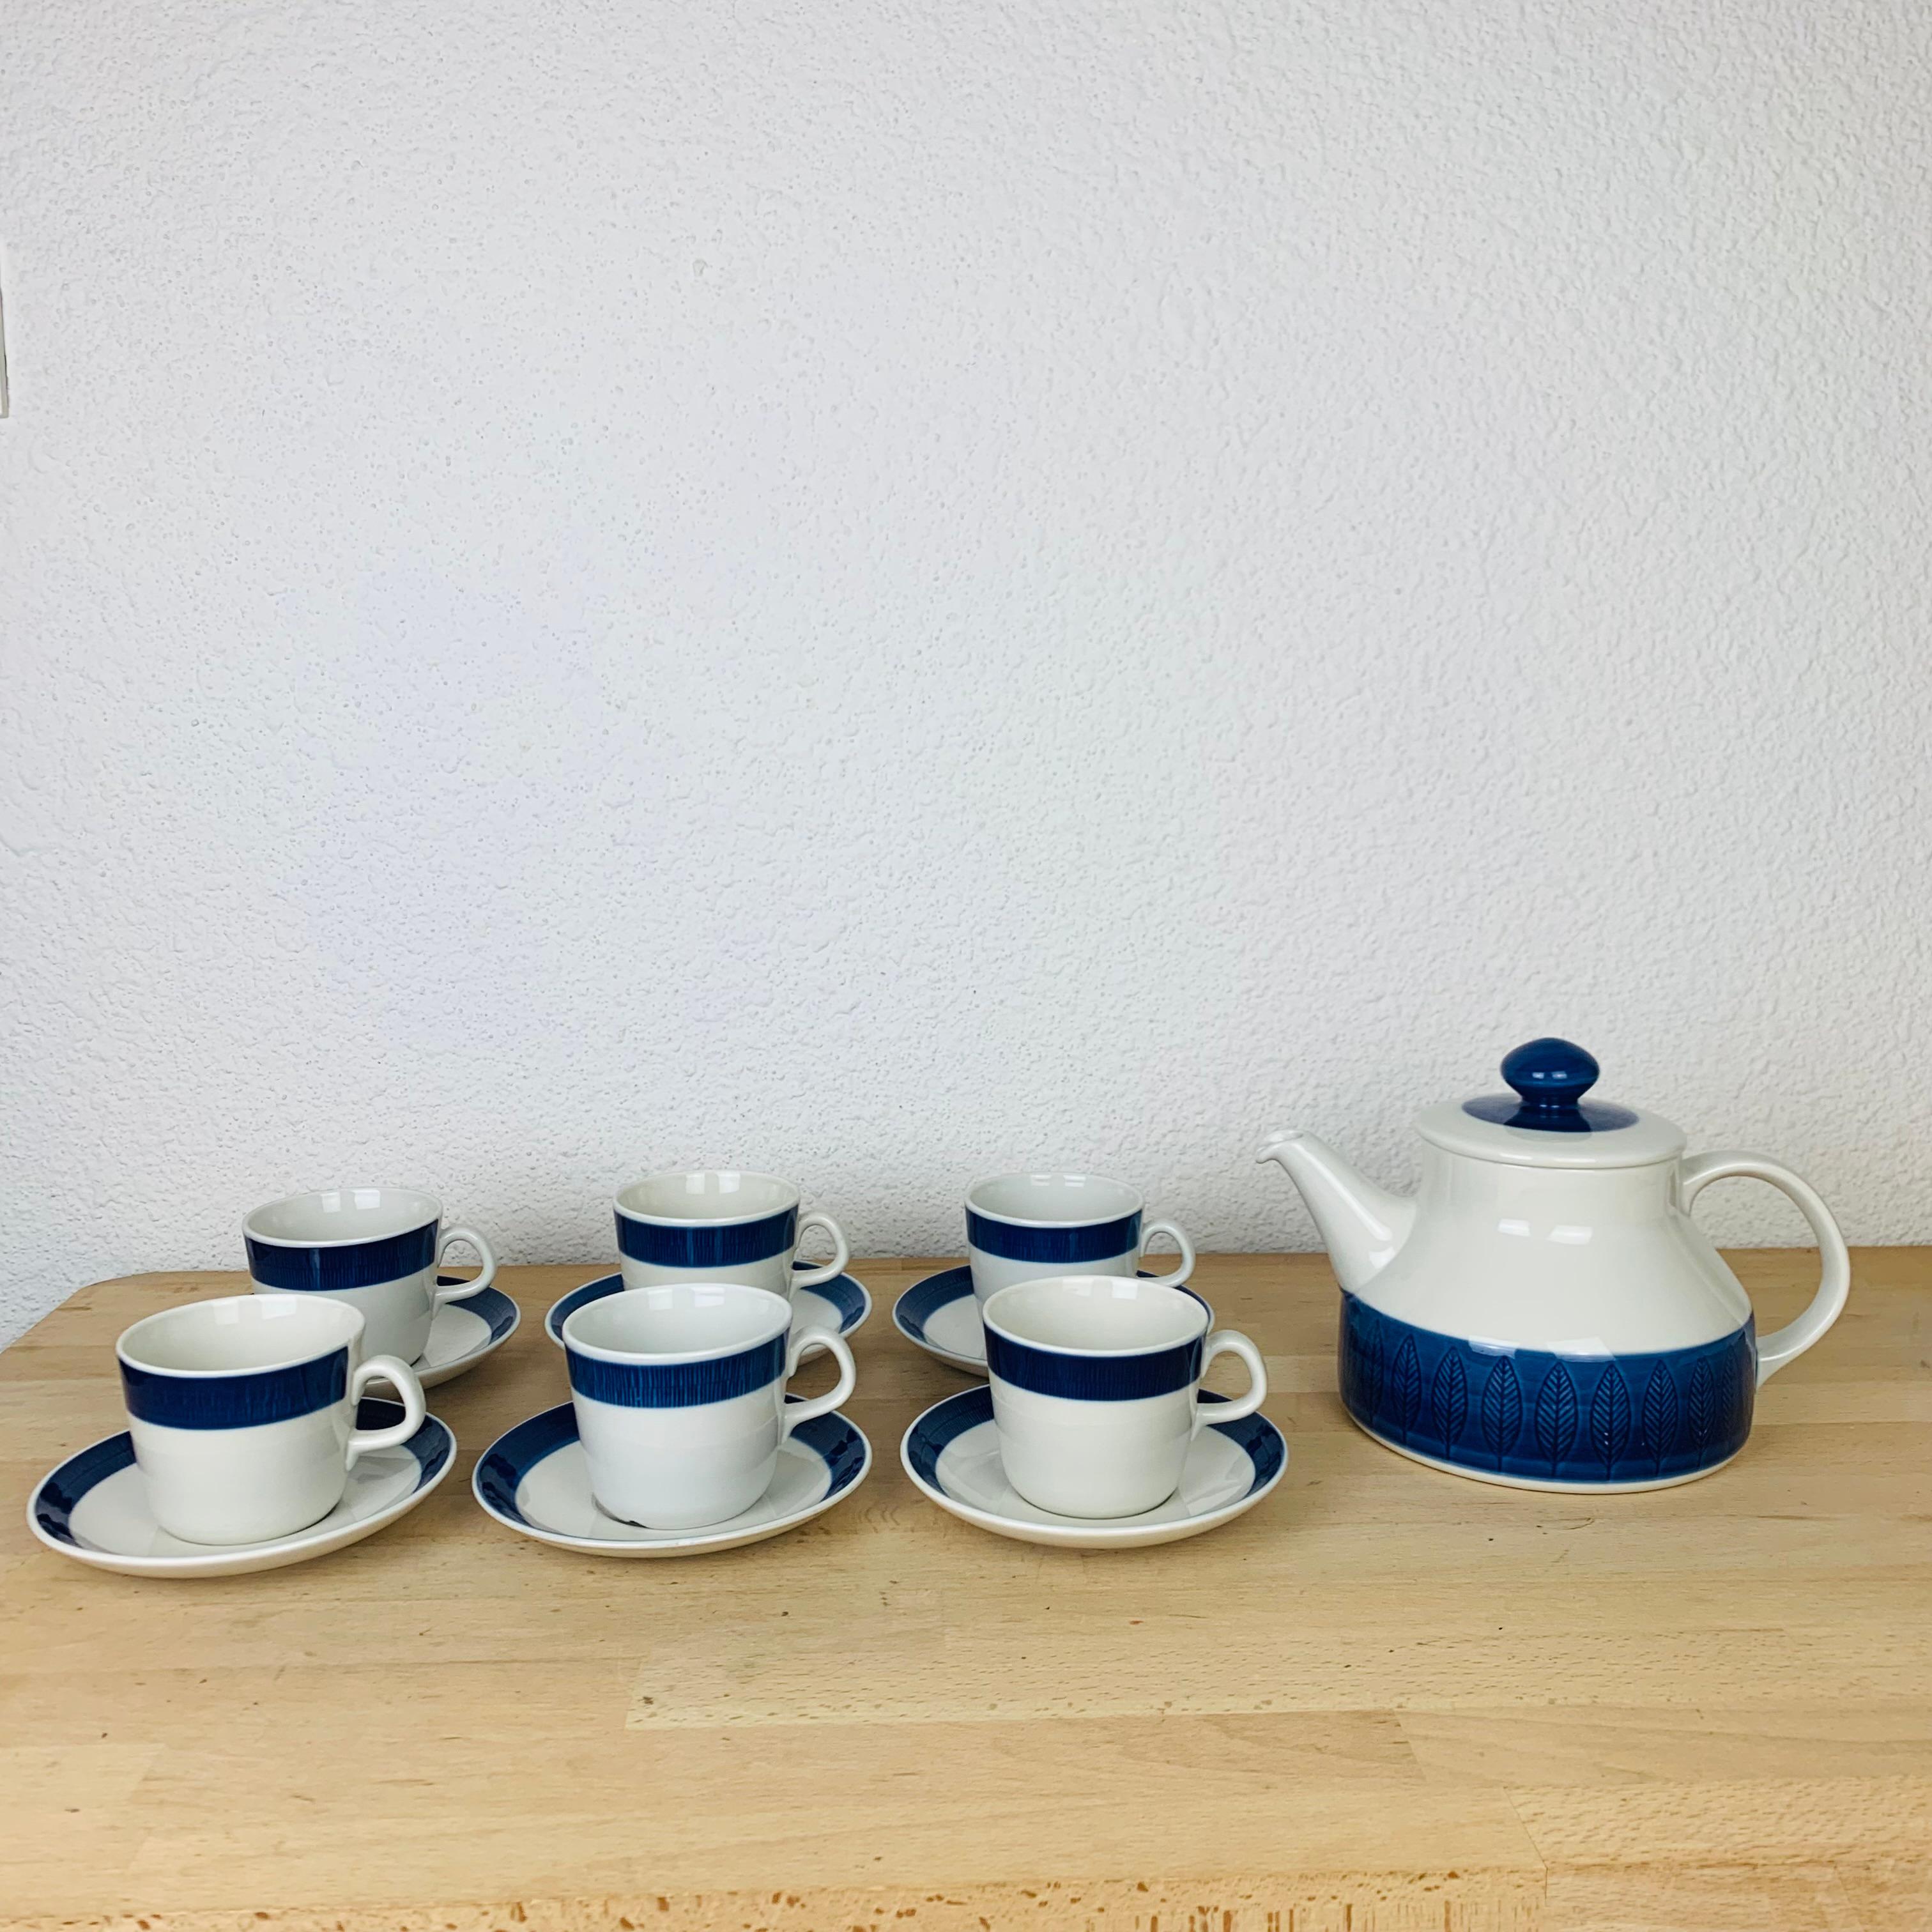 Koka Teeservice von Hertha Bengtson für Rörstrand Schweden, hergestellt in den 1960er Jahren. Dieses Set enthält eine Teekanne, sechs Tassen und sechs Untertassen. 

Leichte alters- und gebrauchsbedingte Abnutzung, kein Chip, kein Riss. 

Maße der